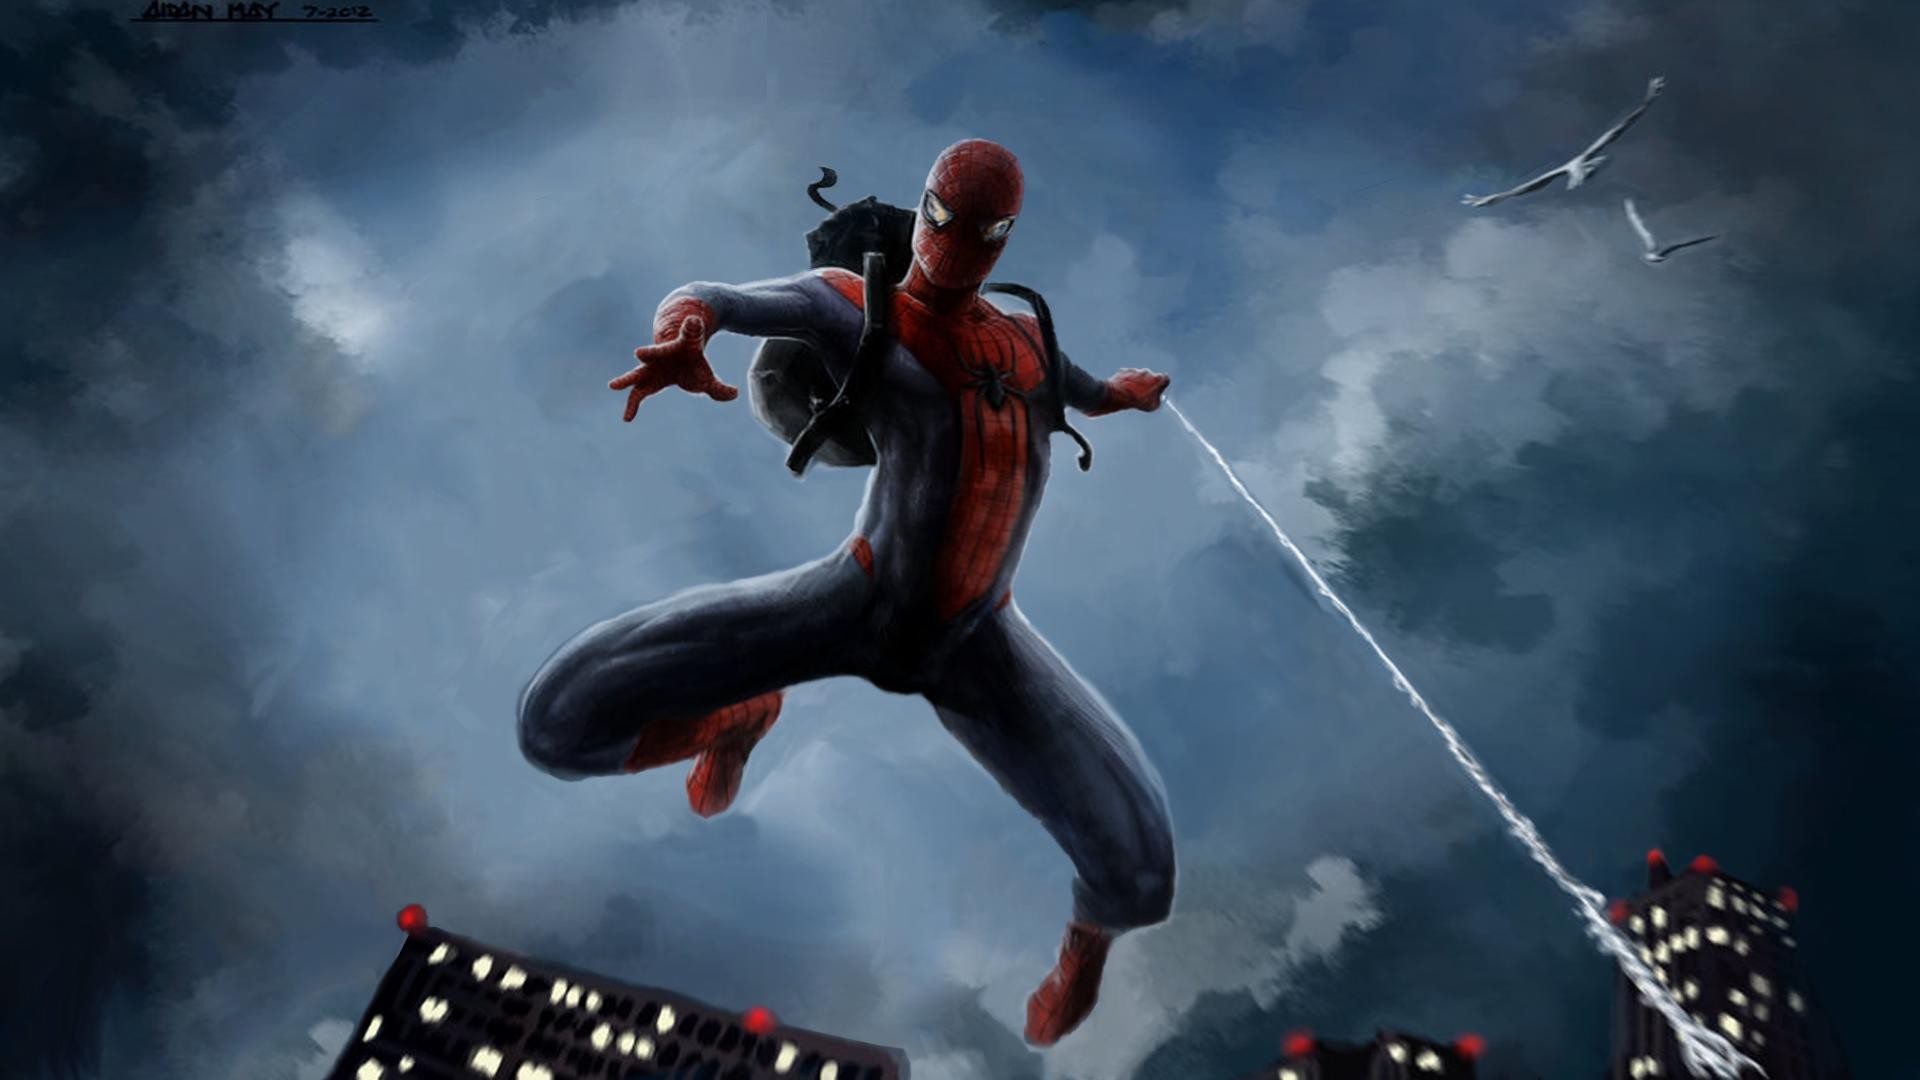 HD Spider Man Wallpaper Superhero Hollywood Marvel Team Cap